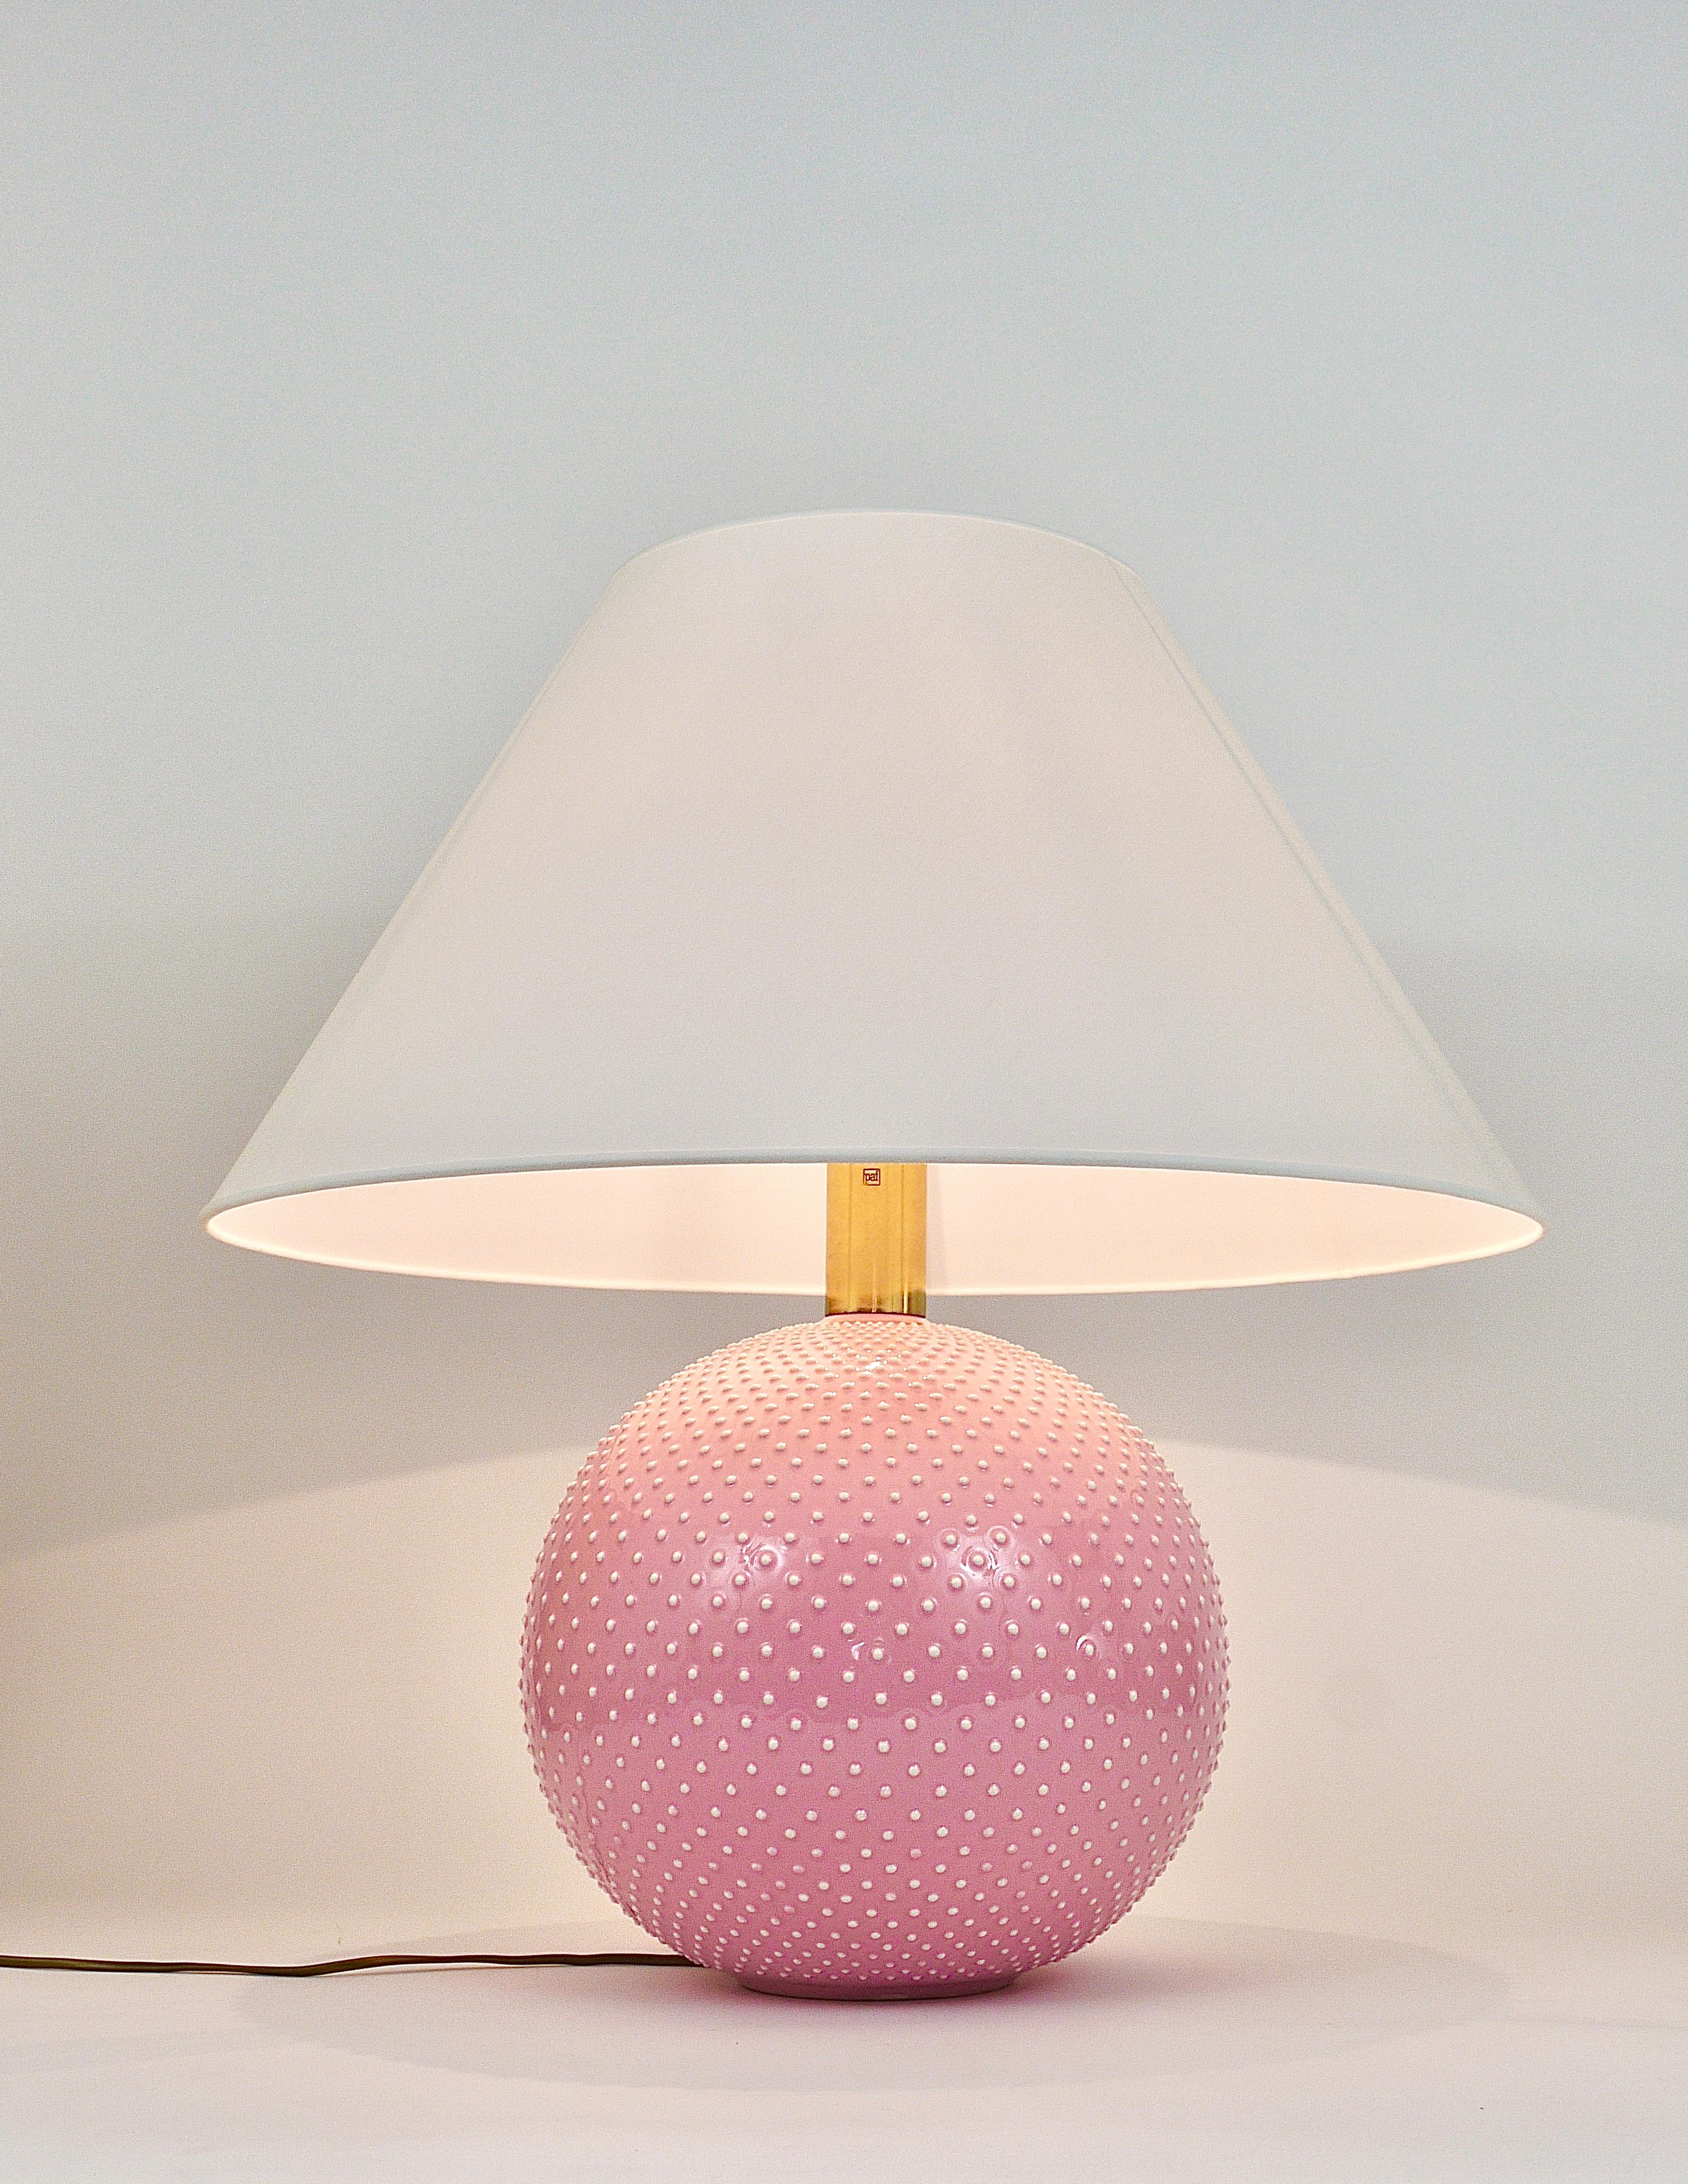 20th Century Rosé Pastel Polka Dot Sphere Table Lamp, Ceramic, Brass, Studio Paf Milano, 1970 For Sale